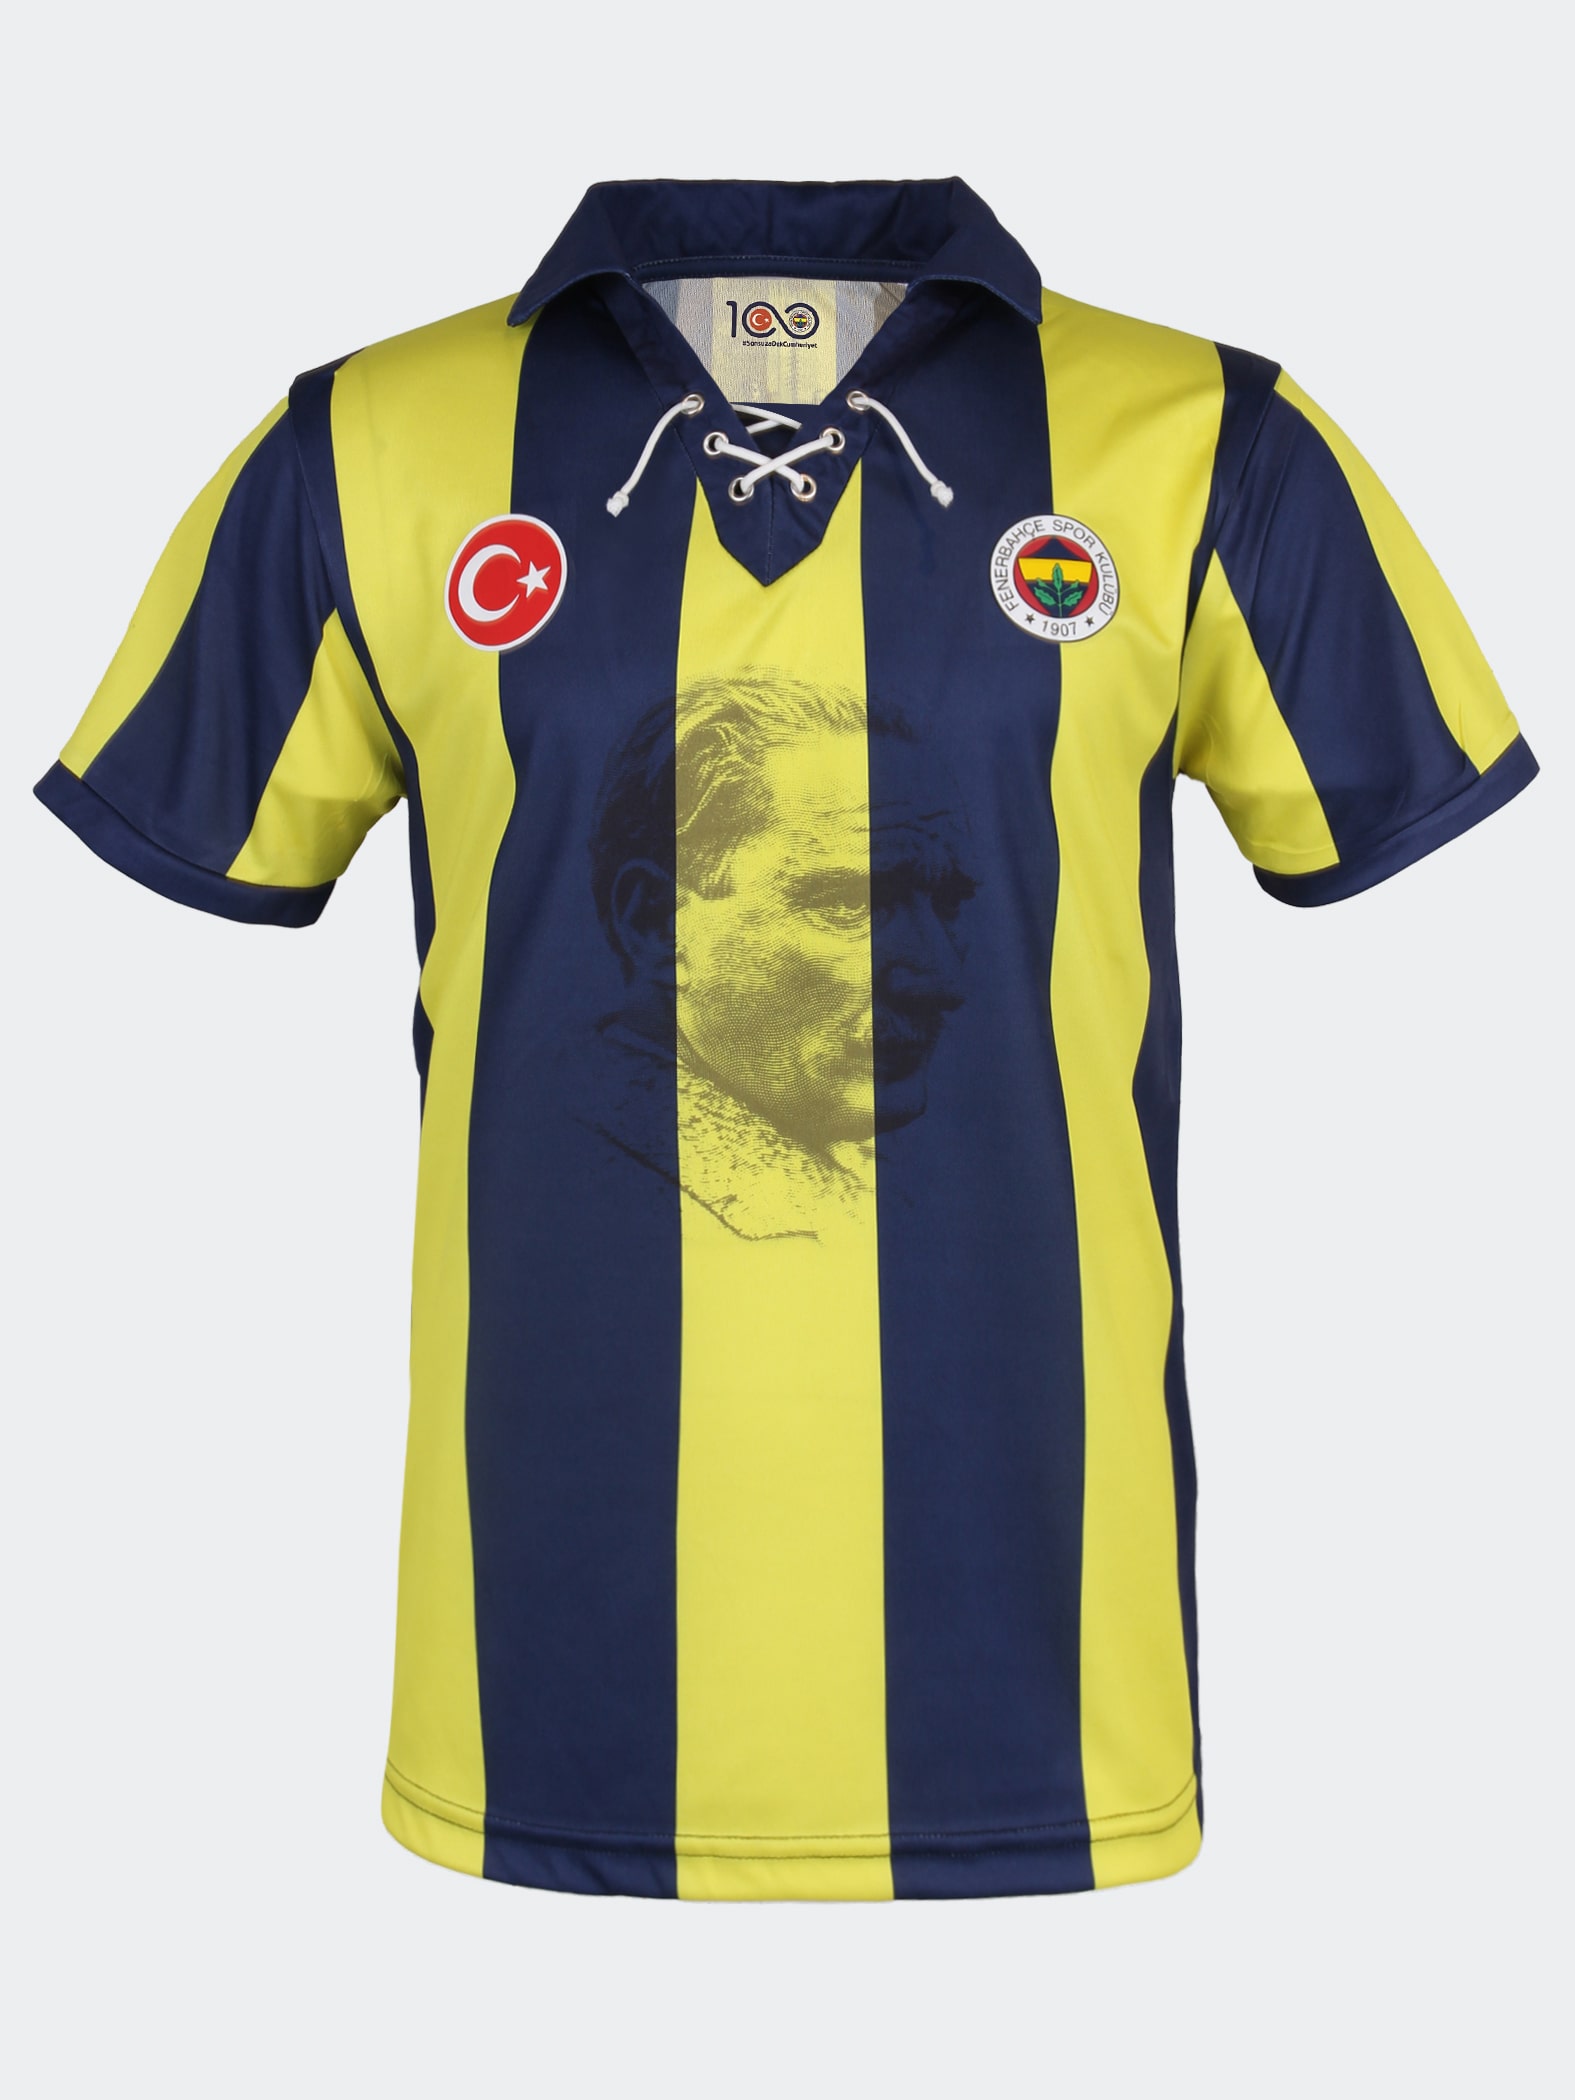 Fenerbahçe Cumhuriyetin 100. Yılı Forma